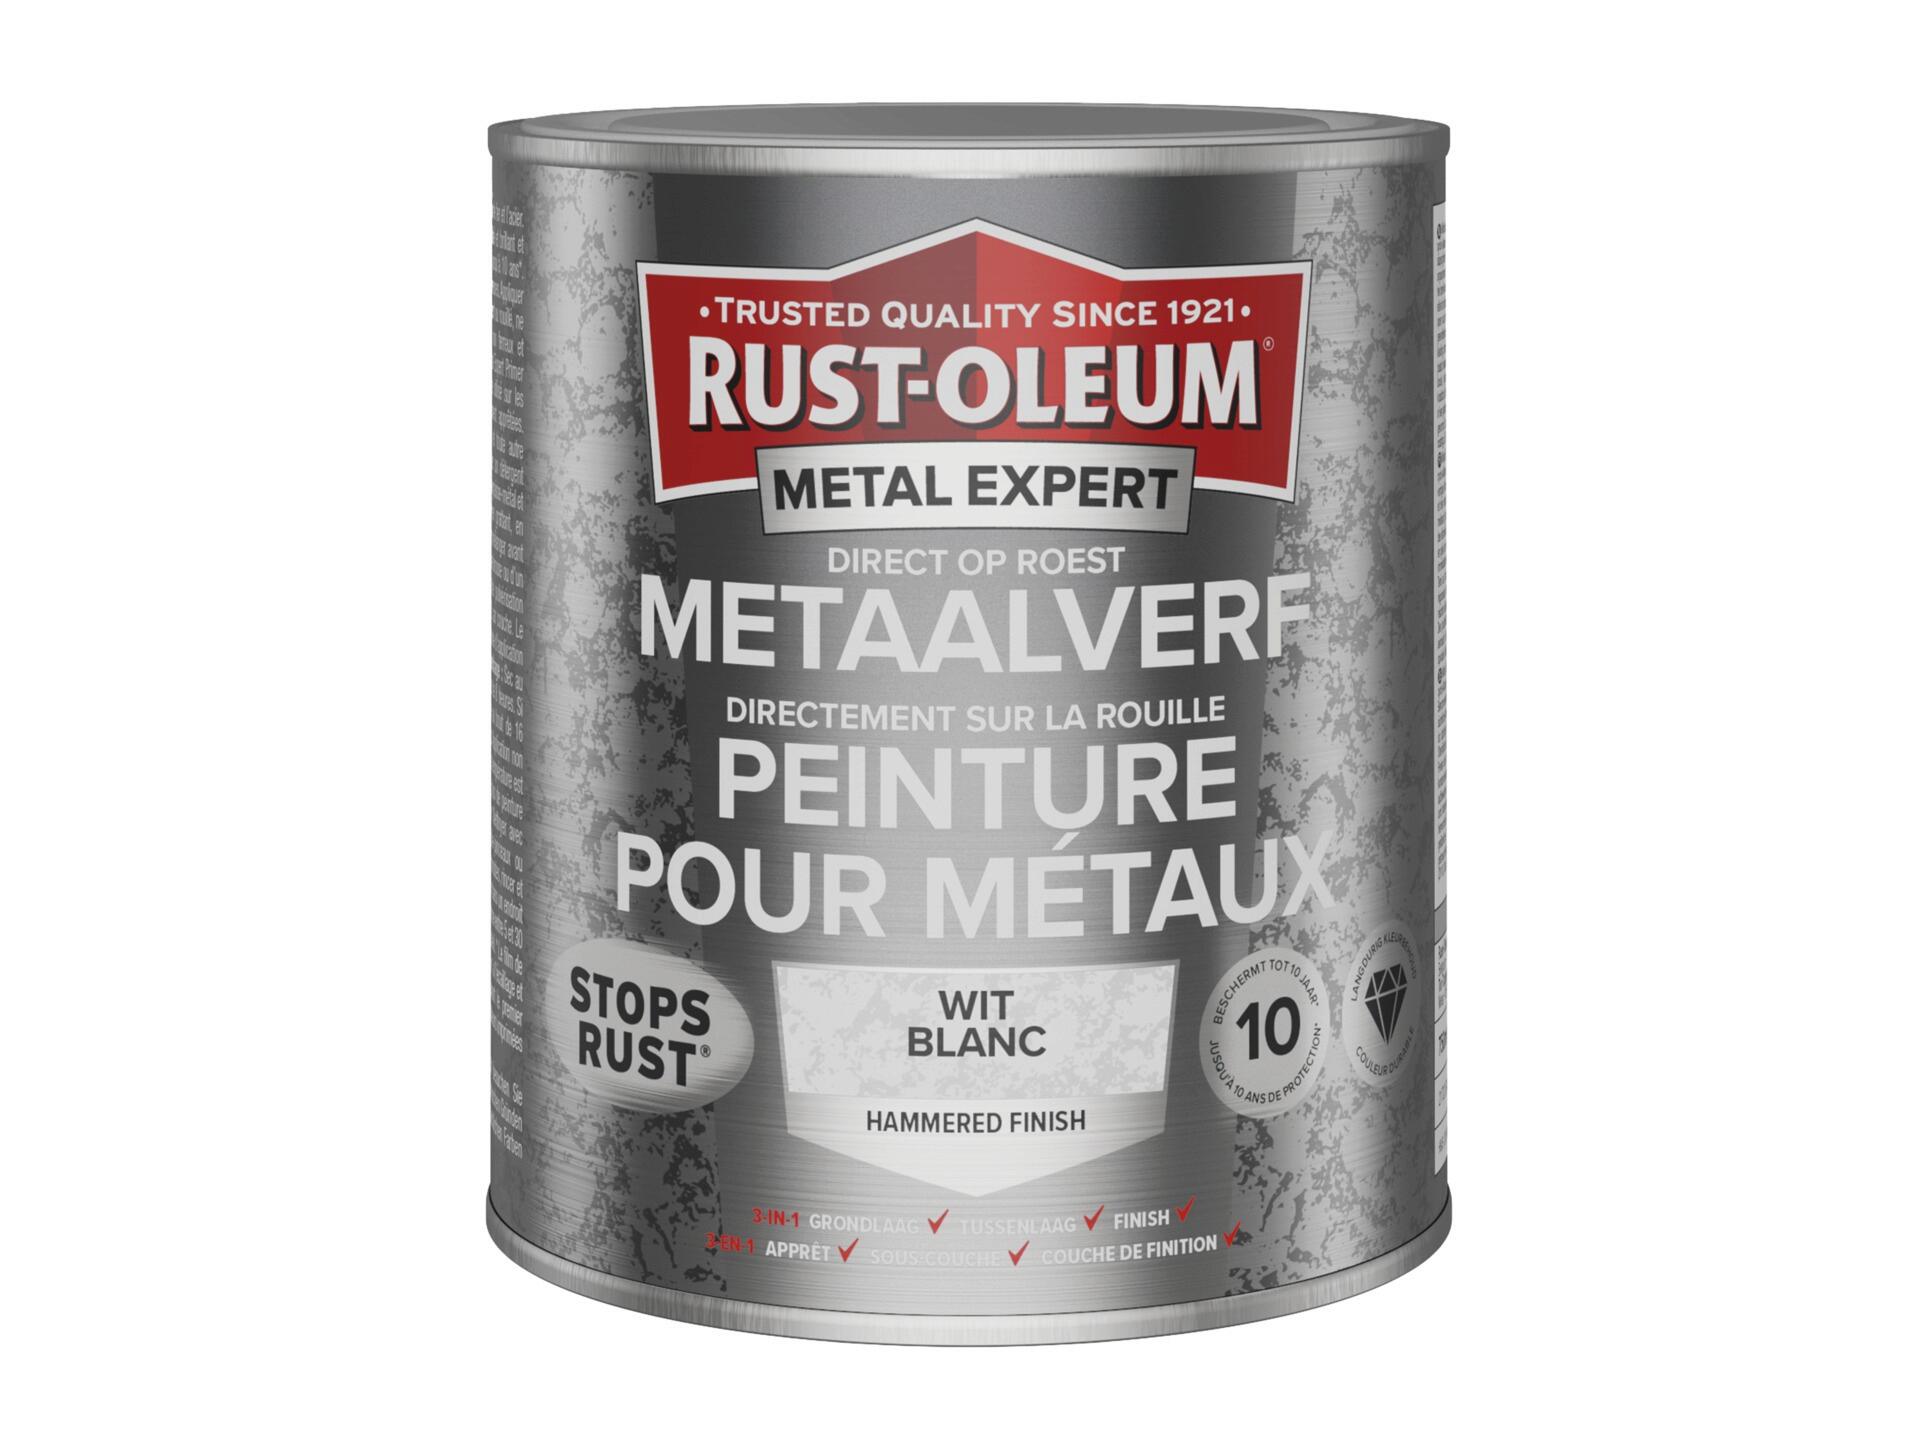 Rust-oleum Metal Expert peinture pour métaux martelé 750ml blanc